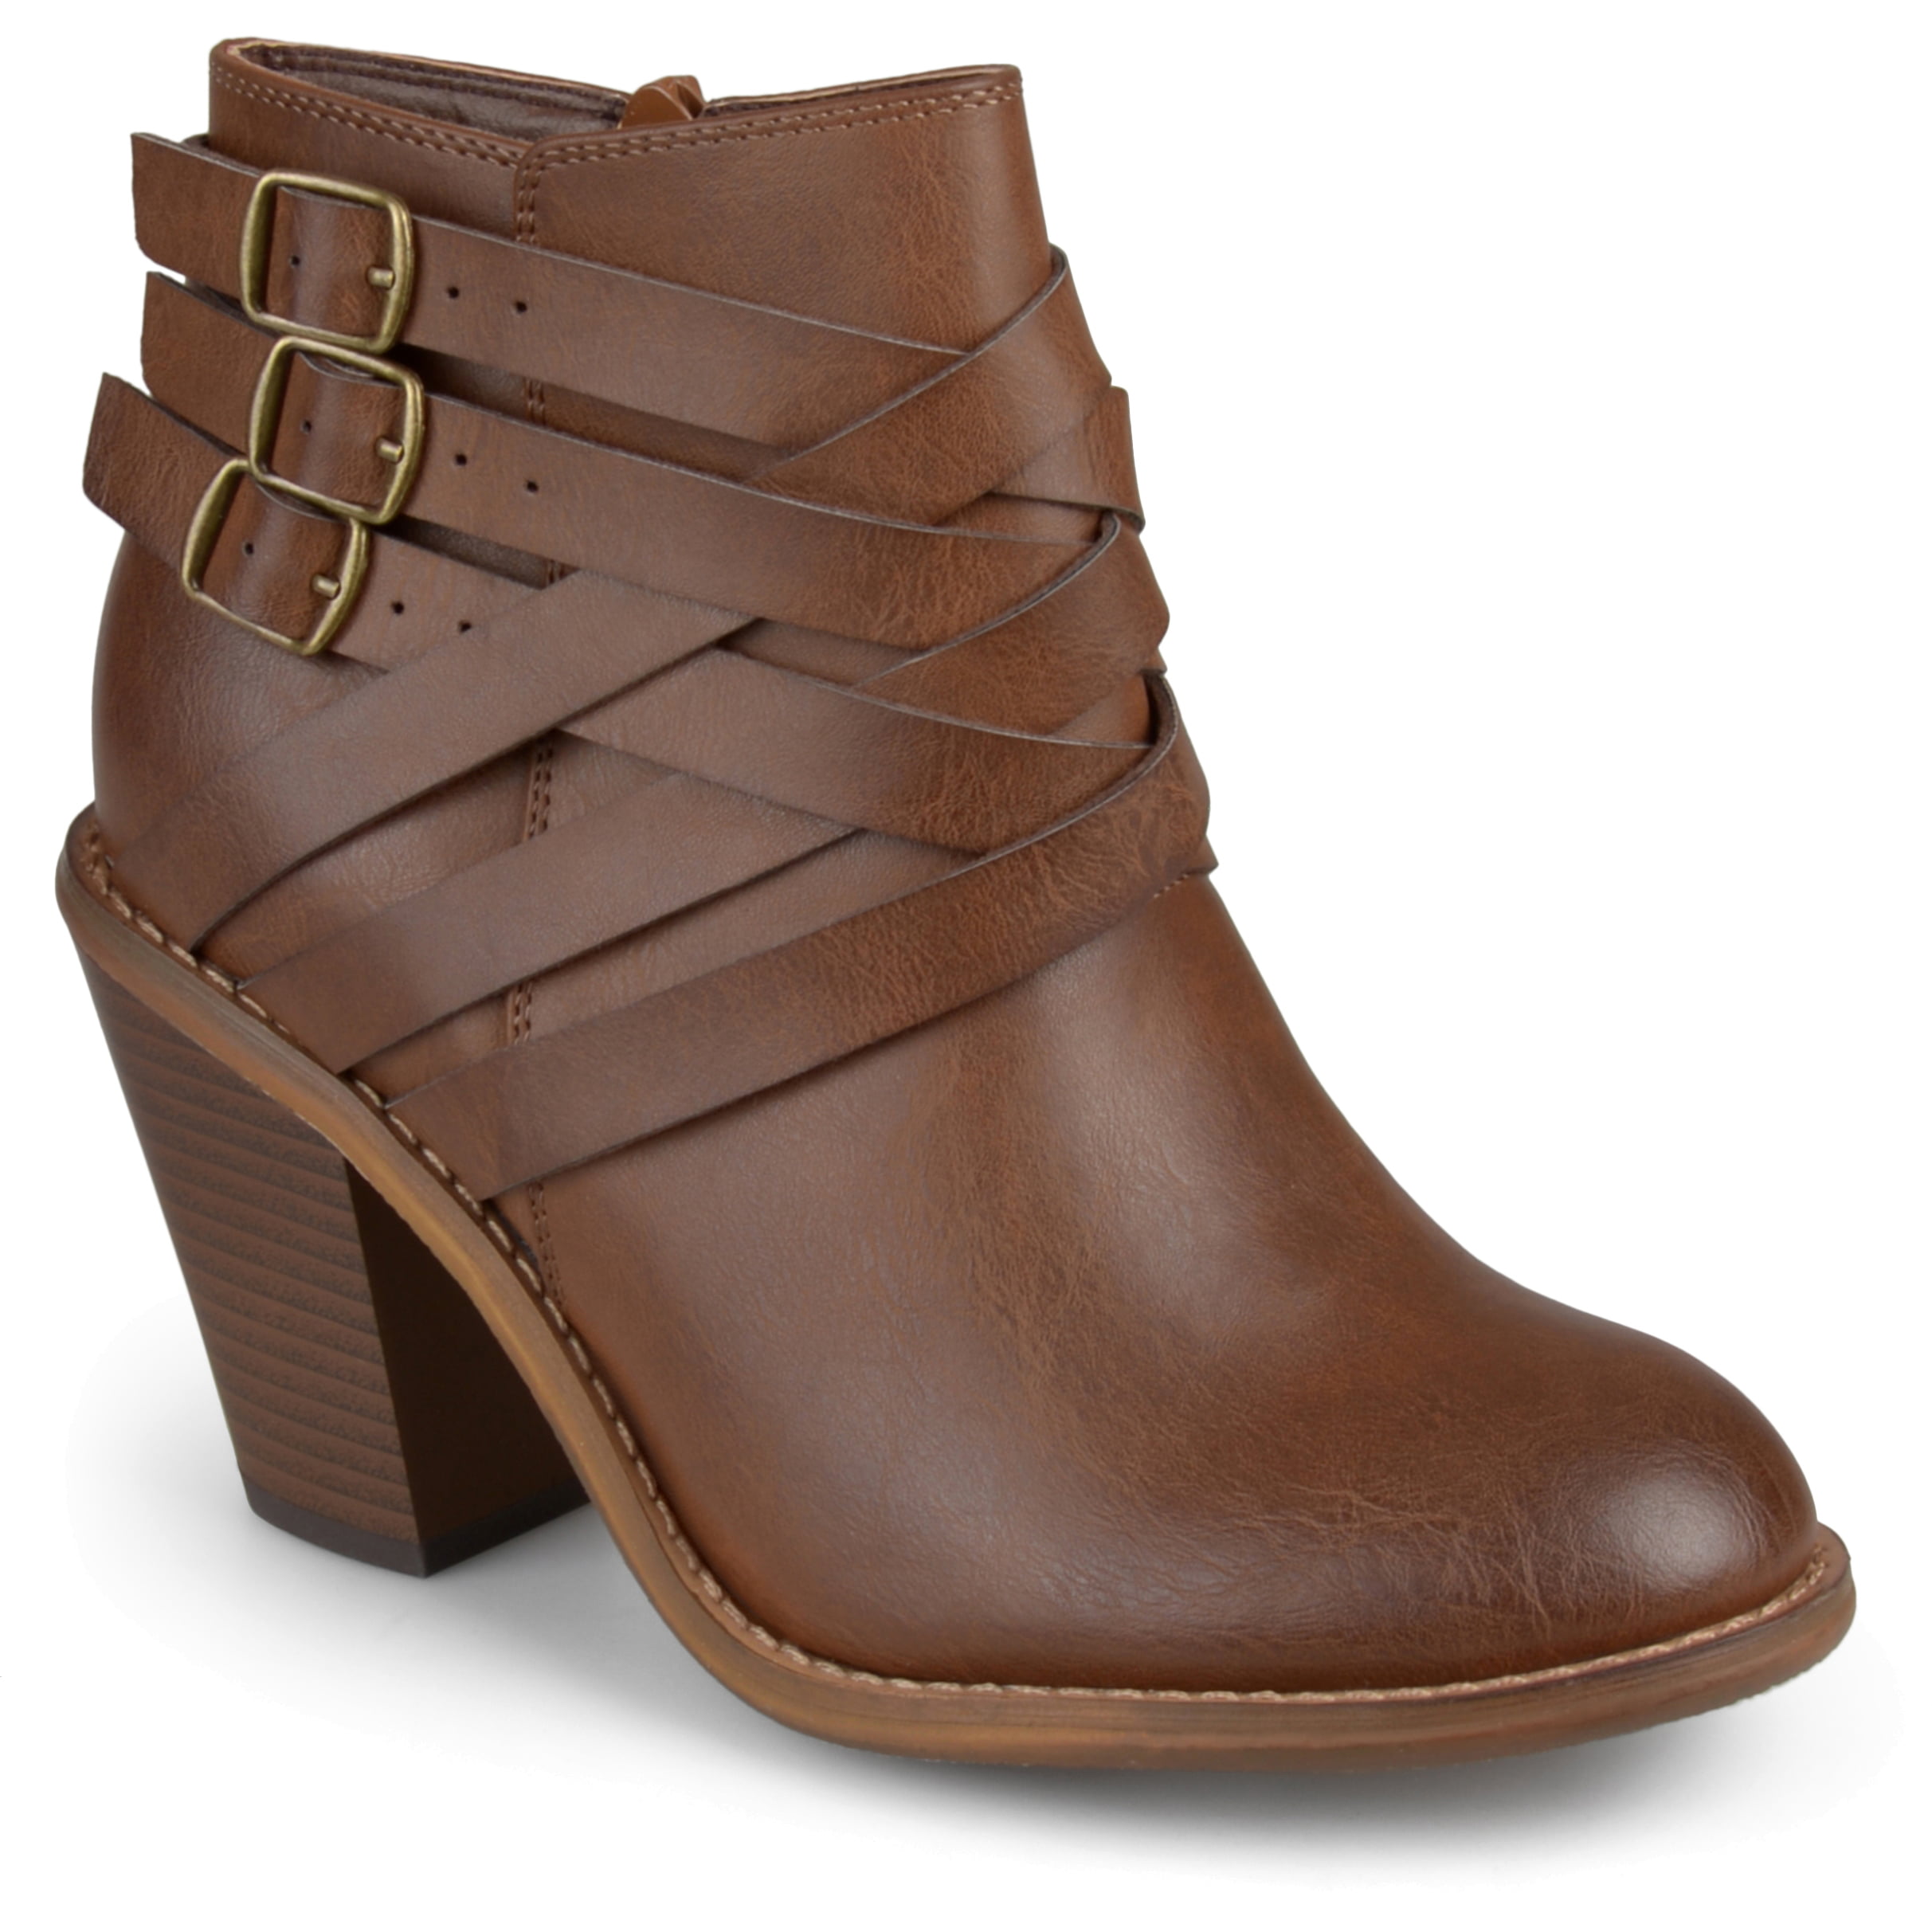 Brinley Co. - Women's Ankle Wide Width Multi Strap Boots - Walmart.com ...